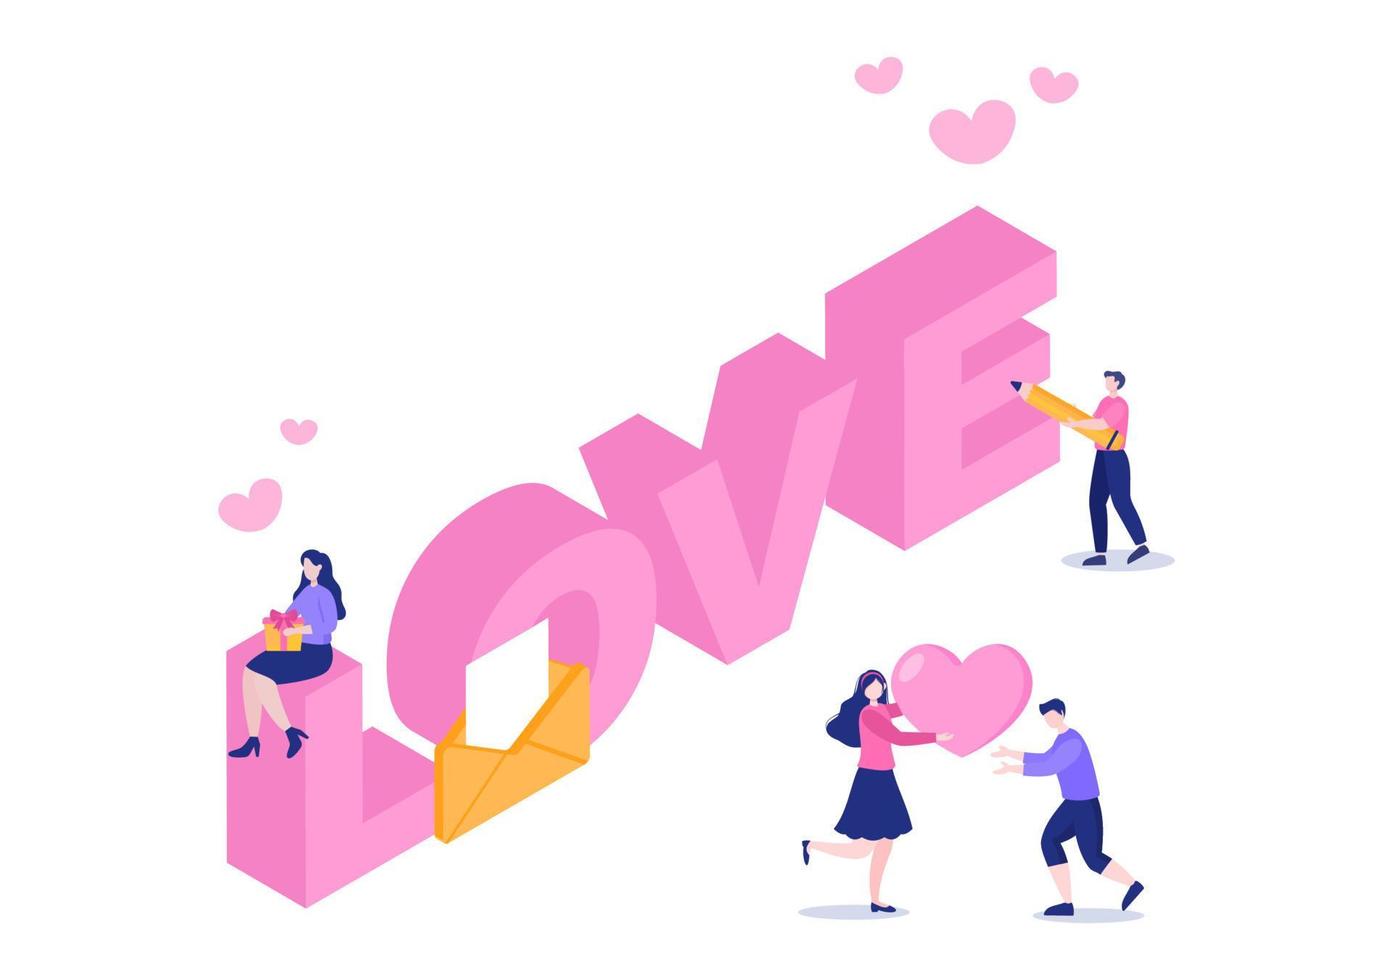 ilustração plana de fundo de carta de amor para mensagens de amor, fraternidade ou amizade na cor rosa, geralmente enviada no dia dos namorados em um envelope ou cartão comemorativo vetor